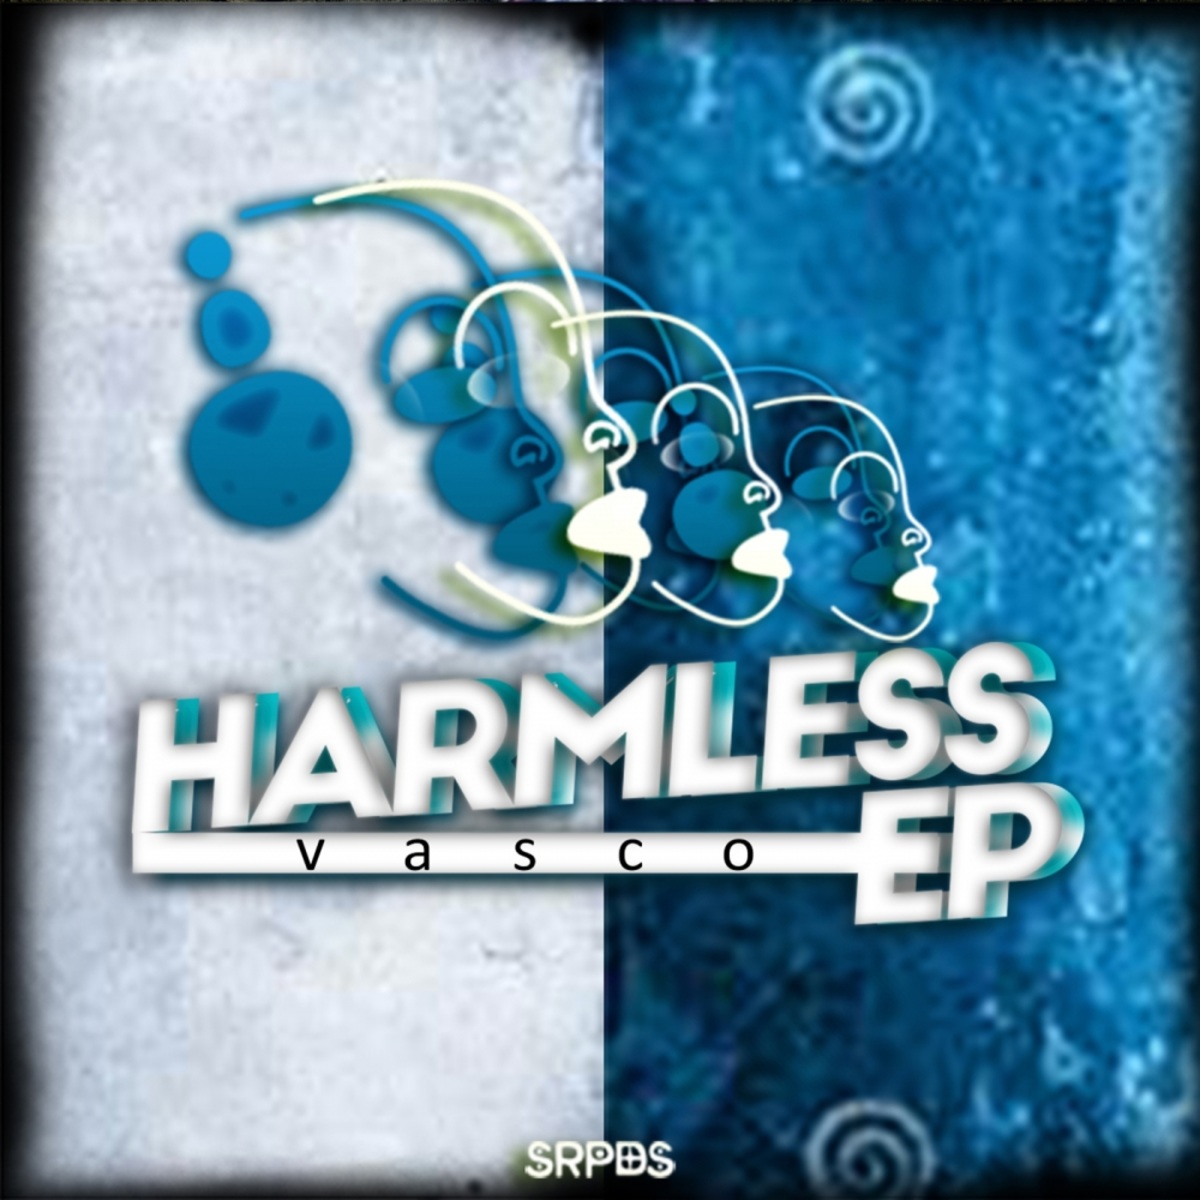 Vasco - Harmless EP / SRPDS